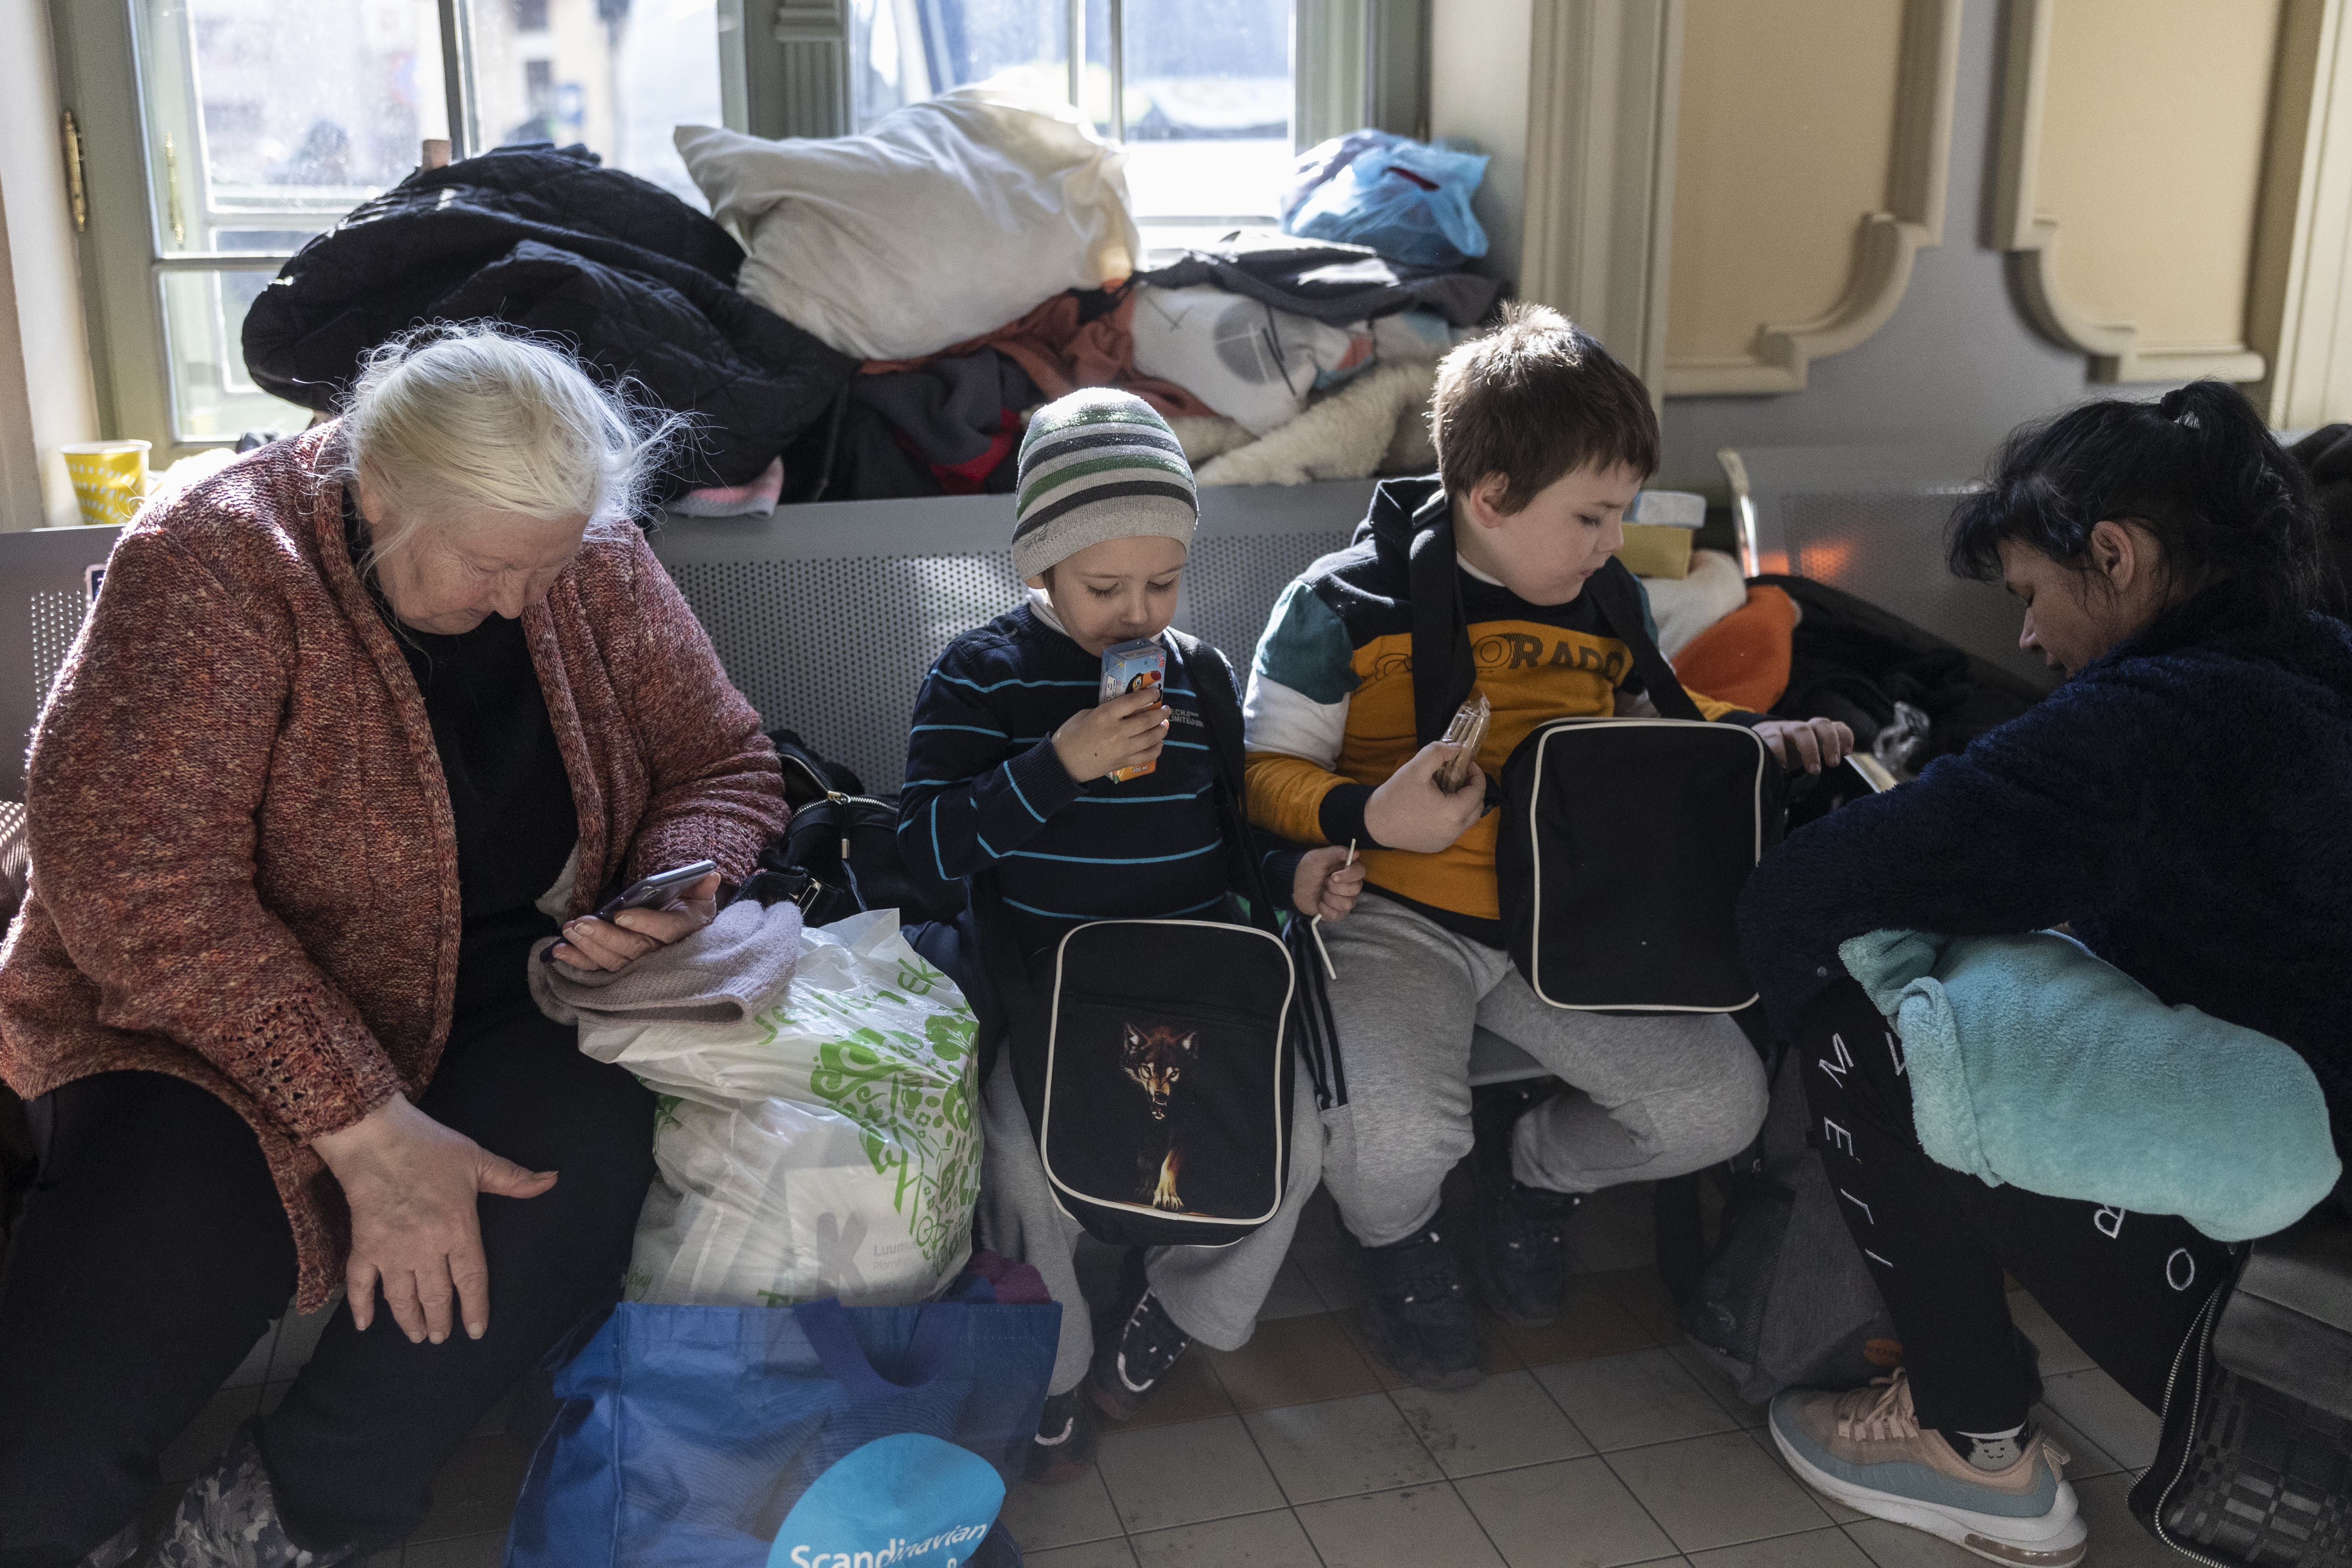 Abuelos y niños, el rostro generacional de los damnificados de la guerra en Ucrania